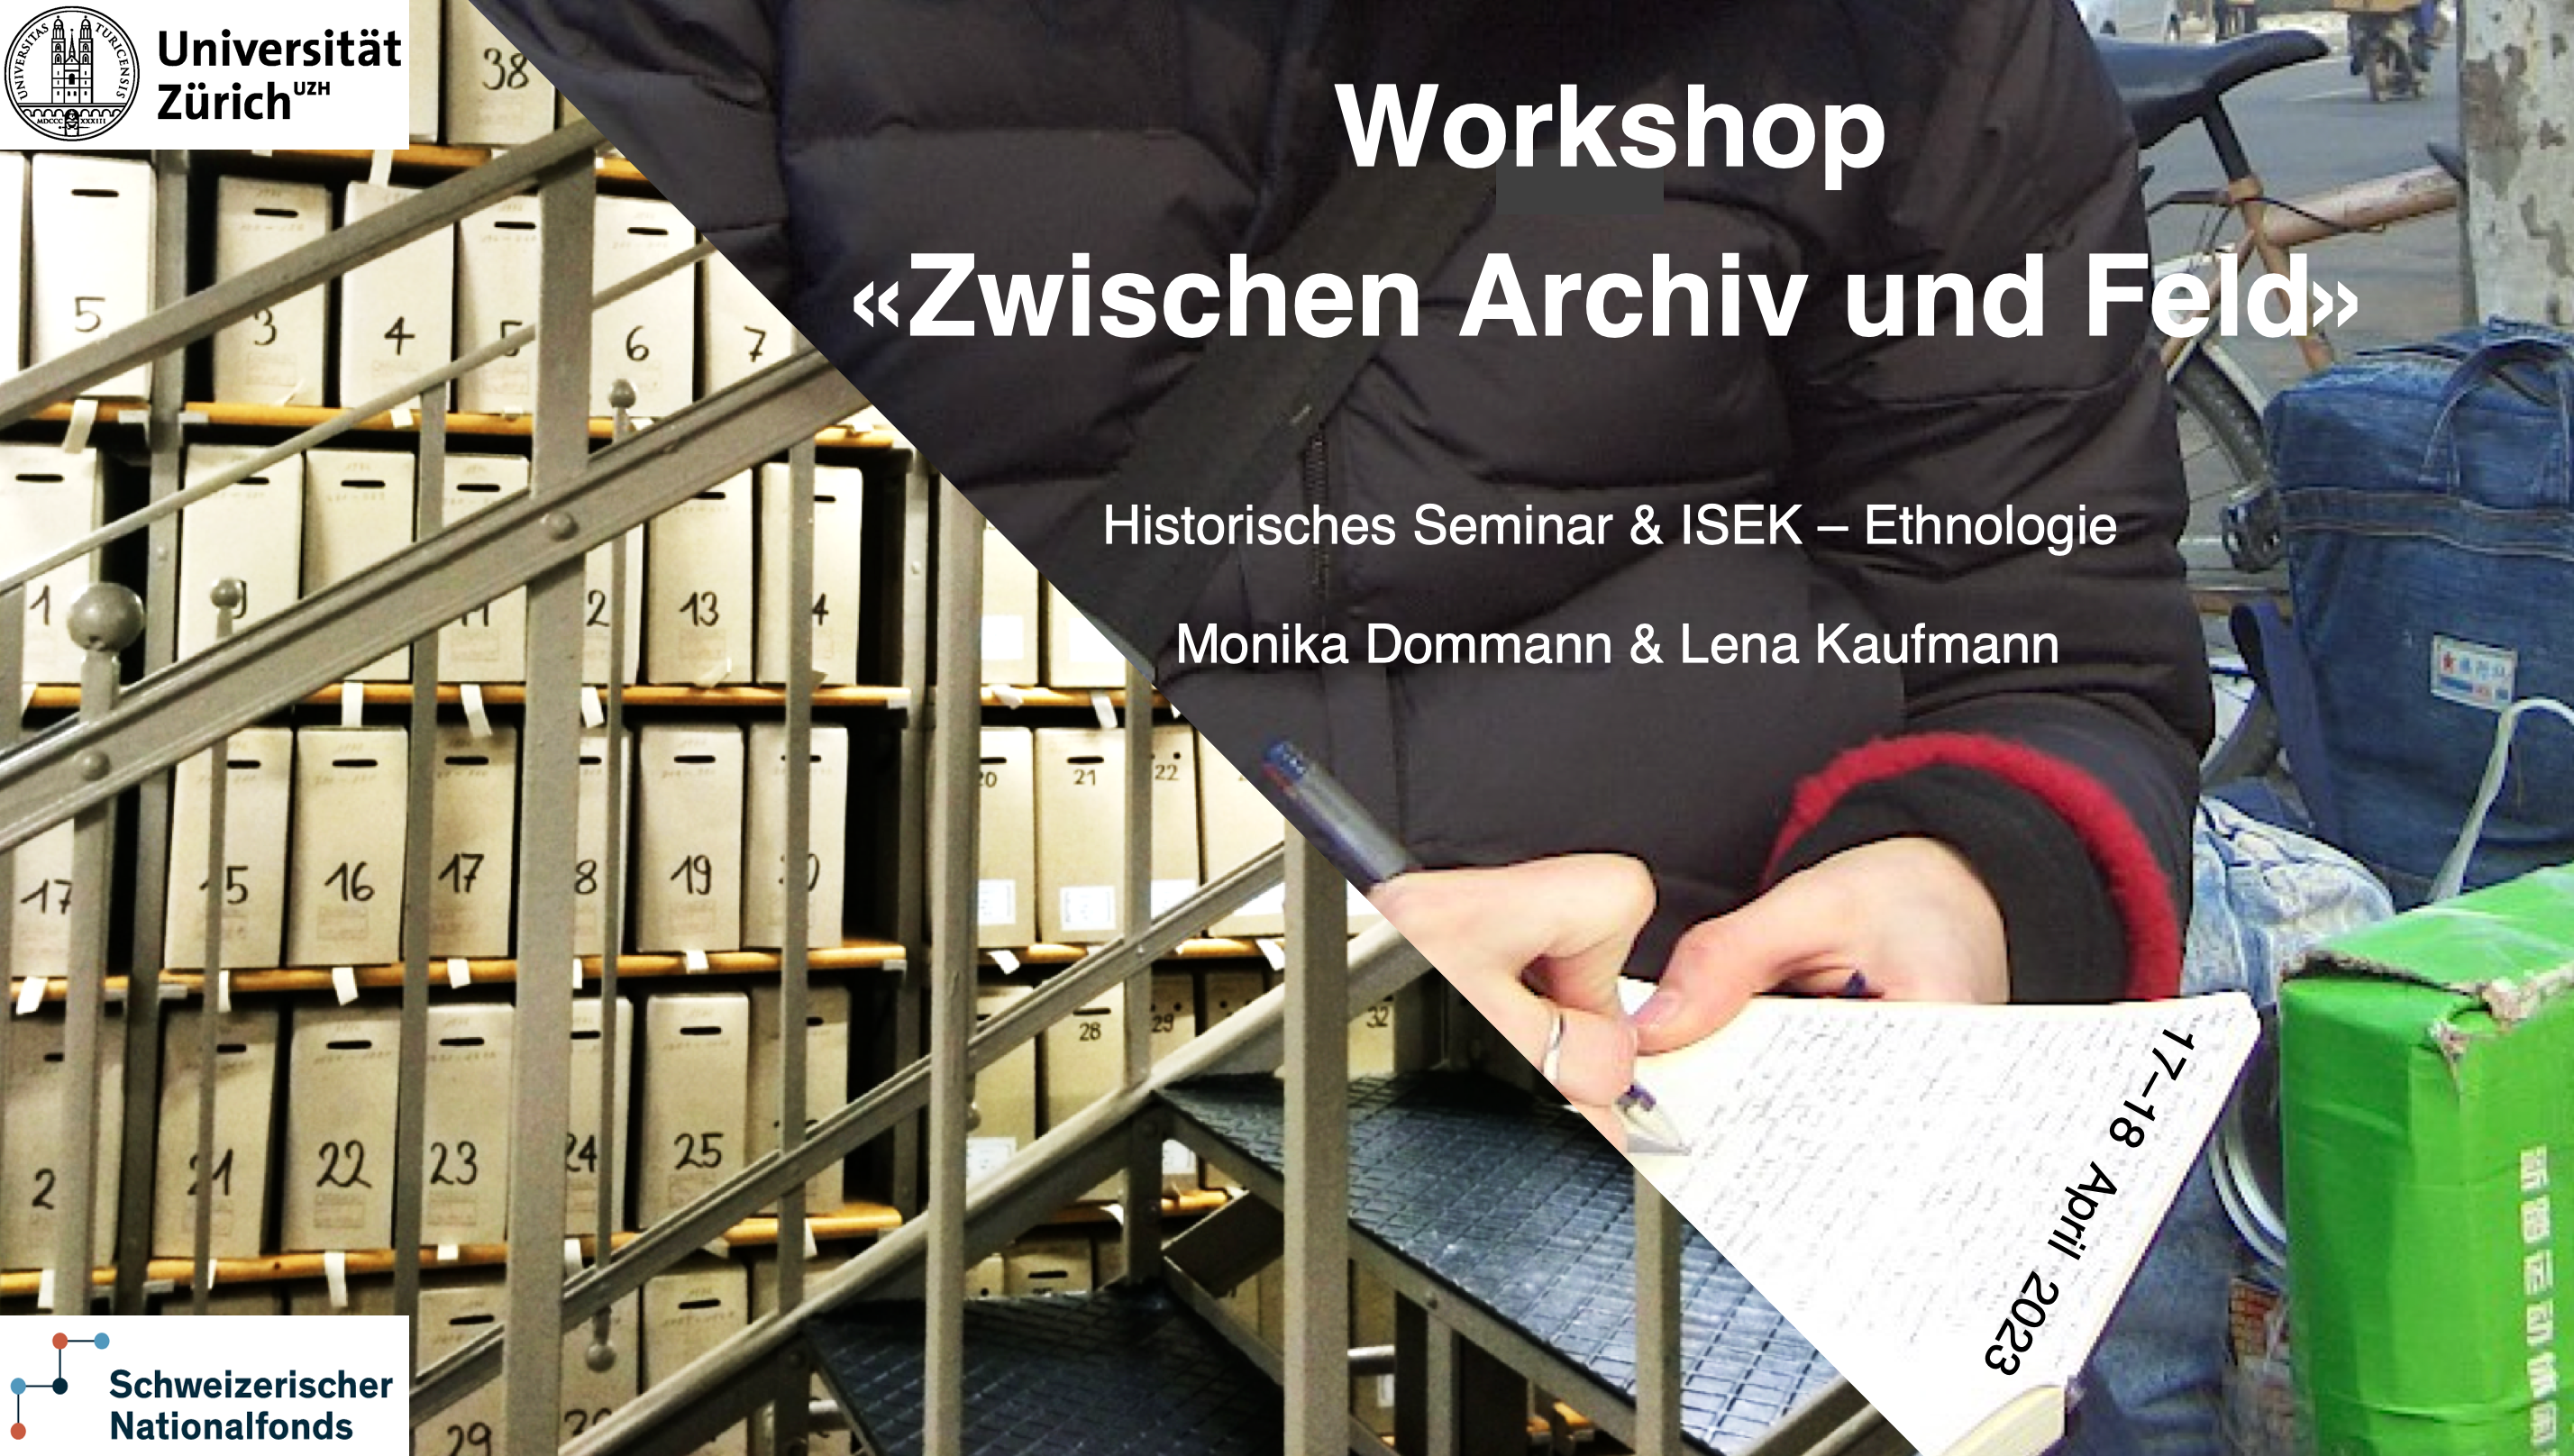 Flyer Dommann Kaufmann Workshop "Zwischen Archiv und Feld"